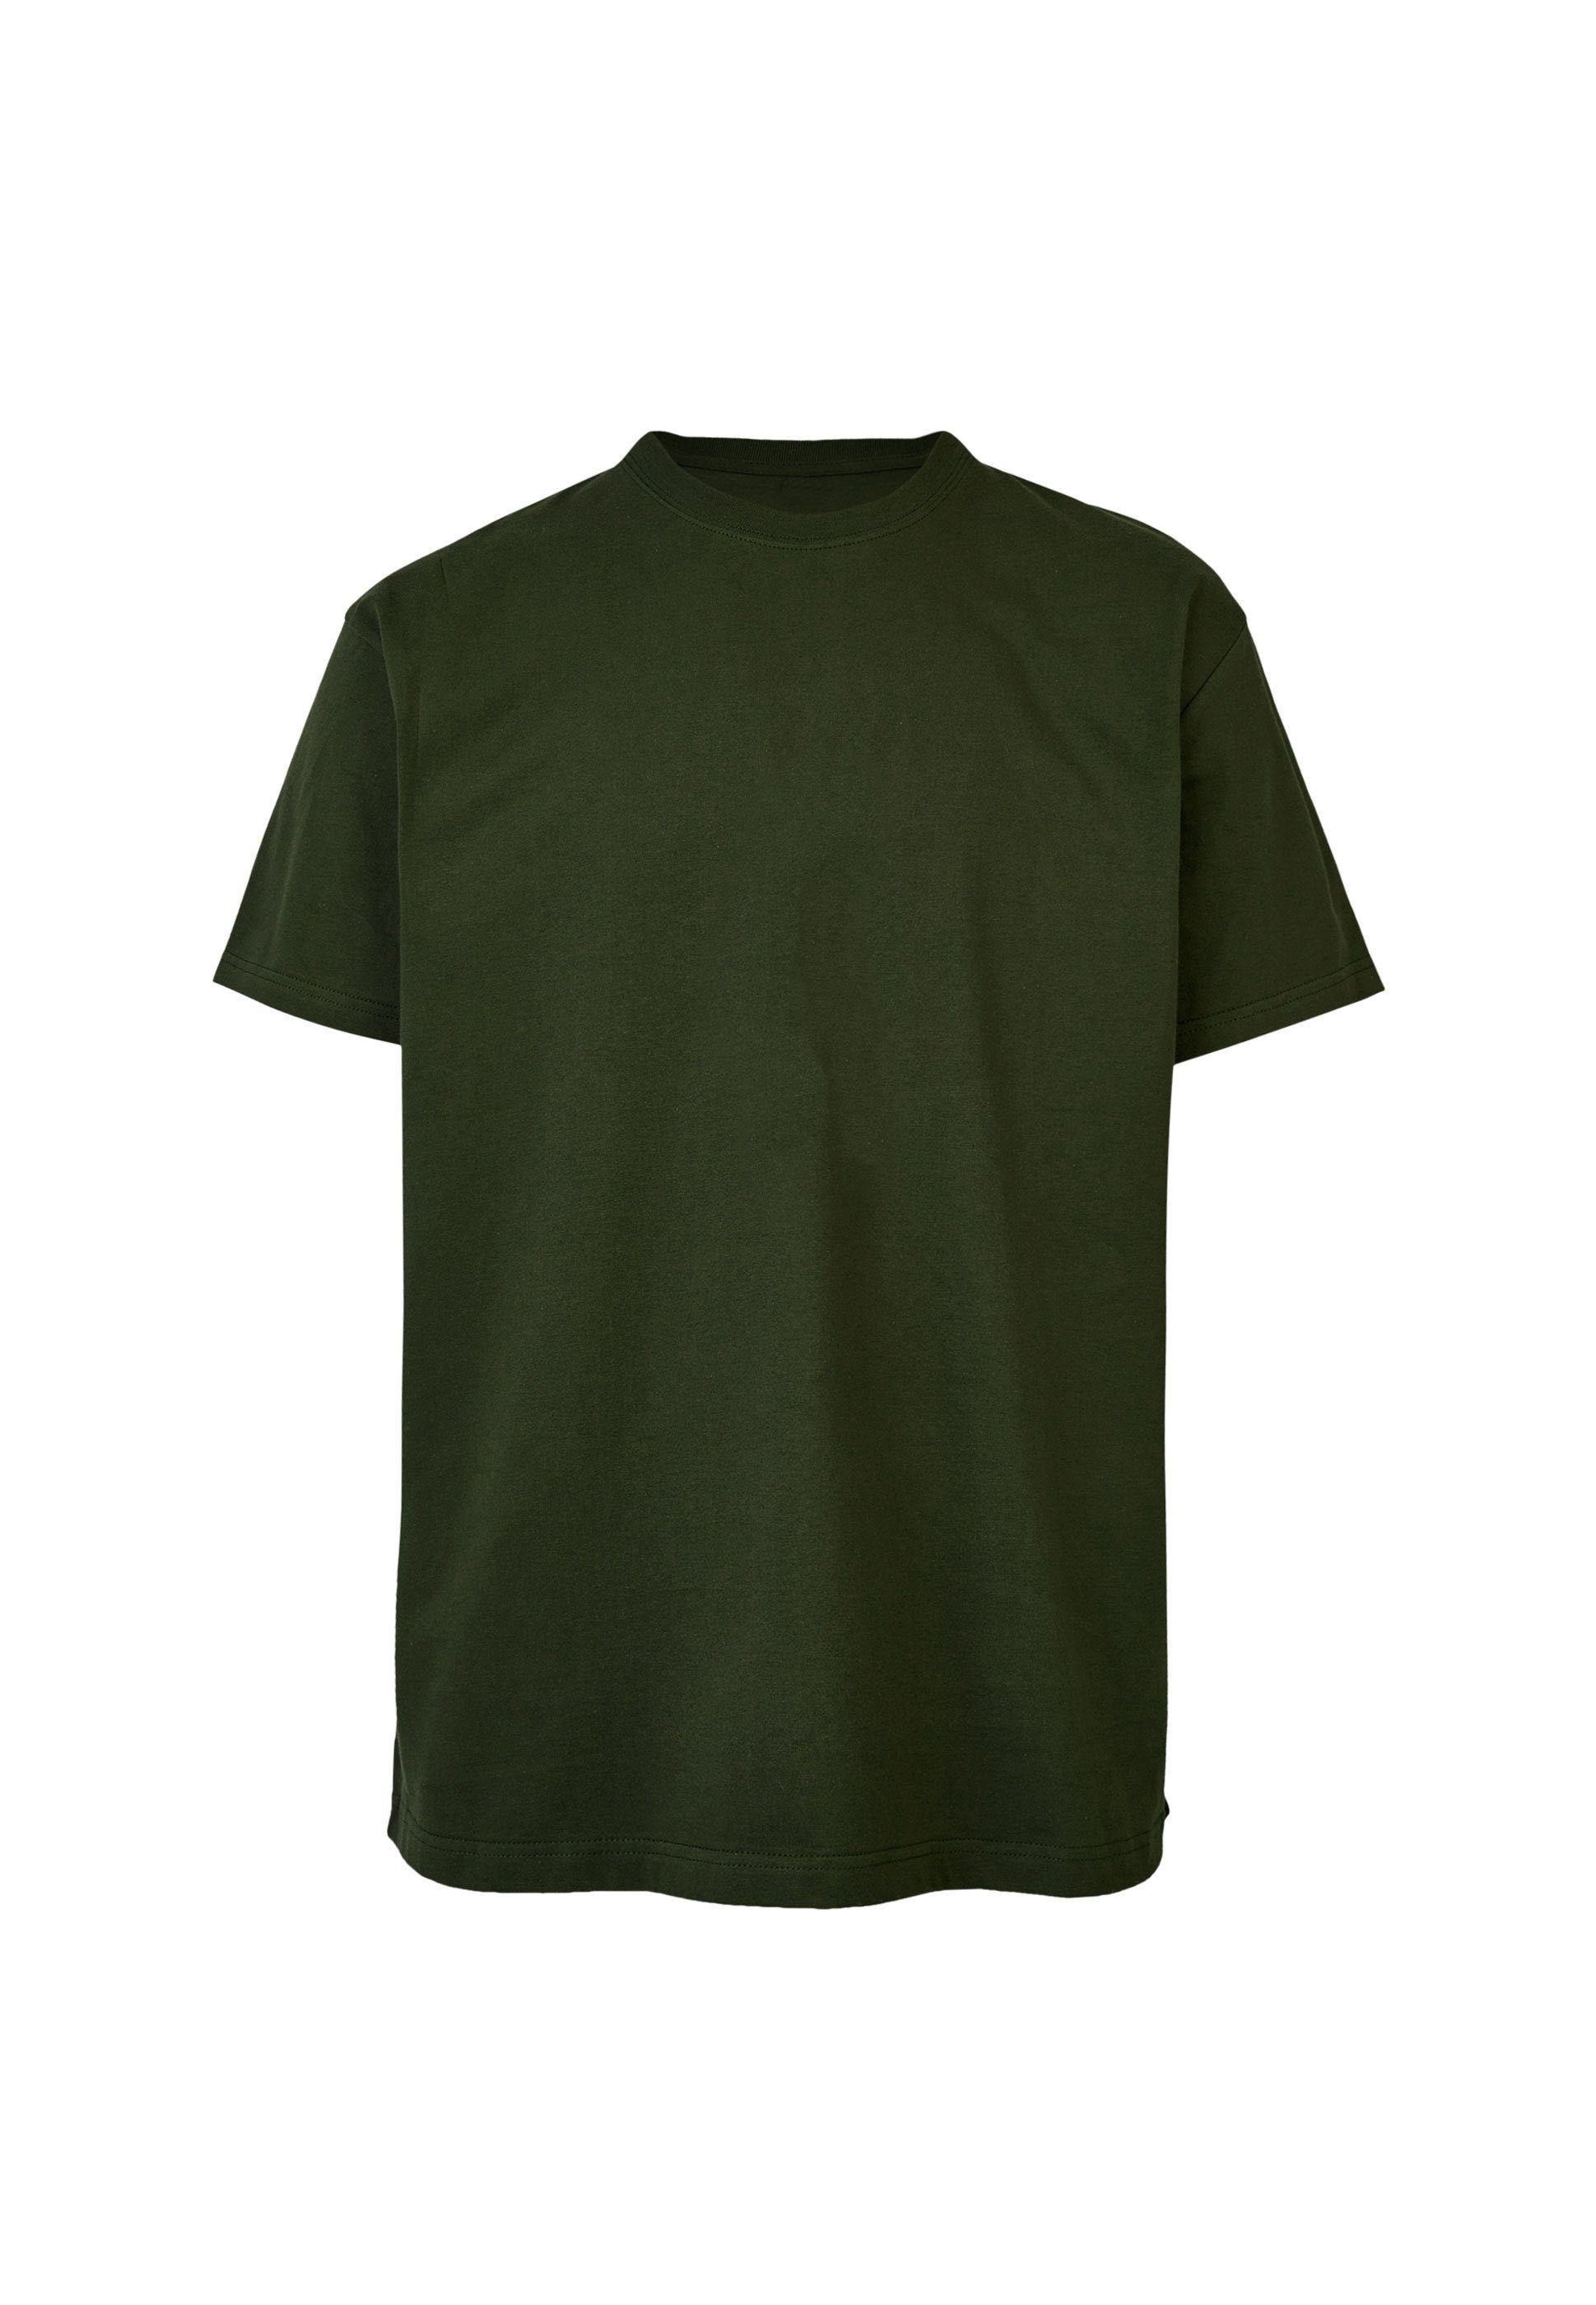 Cleptomanicx T-Shirt mit Gull Delic grün lässigem Backprint